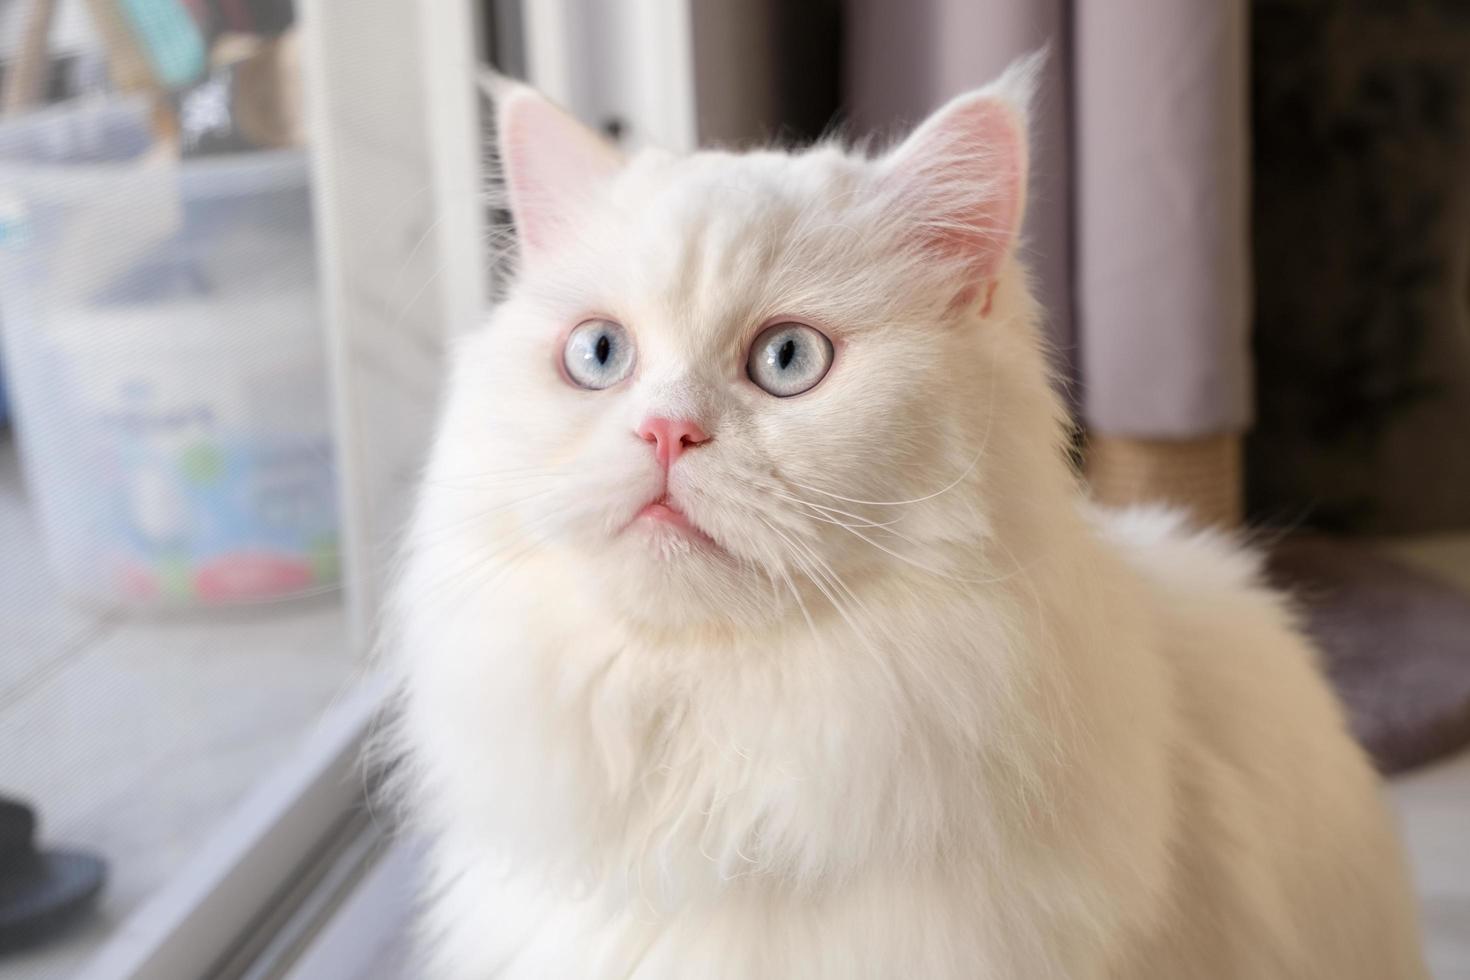 persisk docka ansikte chinchilla vit katt. fluffigt sött husdjur med blått öga foto